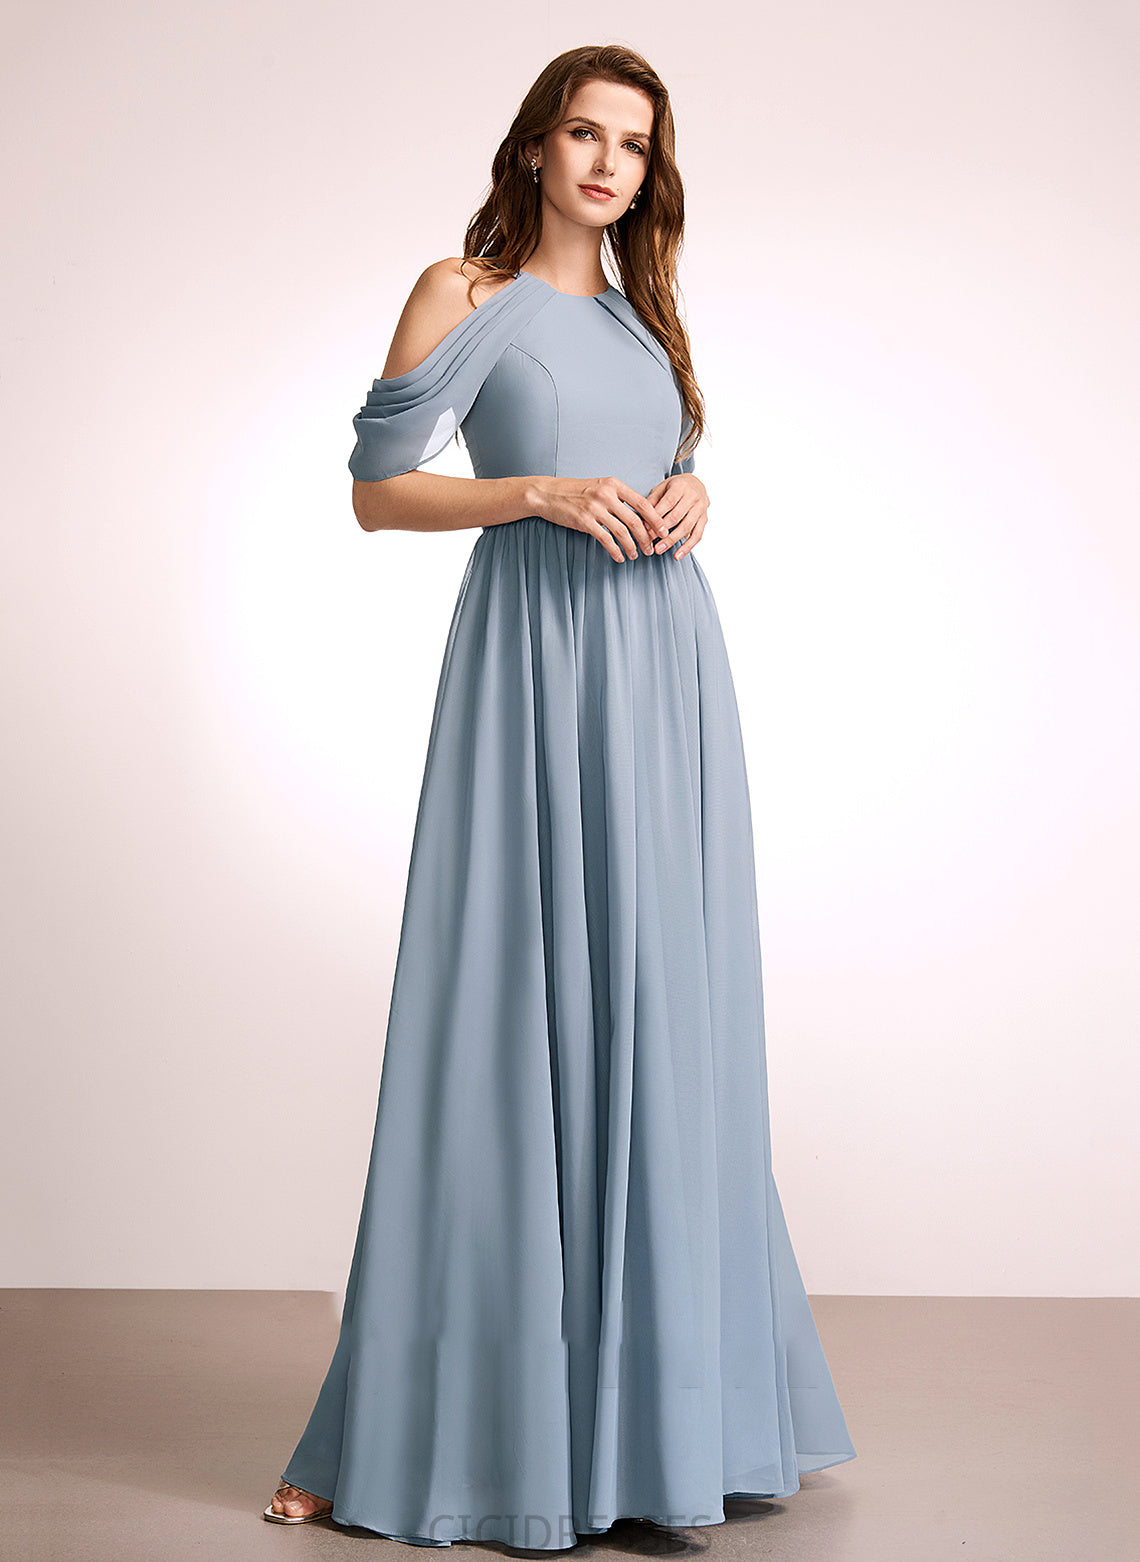 Neckline Straps Silhouette A-Line HighNeck Fabric Length Floor-Length Tiana Sleeveless Natural Waist A-Line/Princess Bridesmaid Dresses